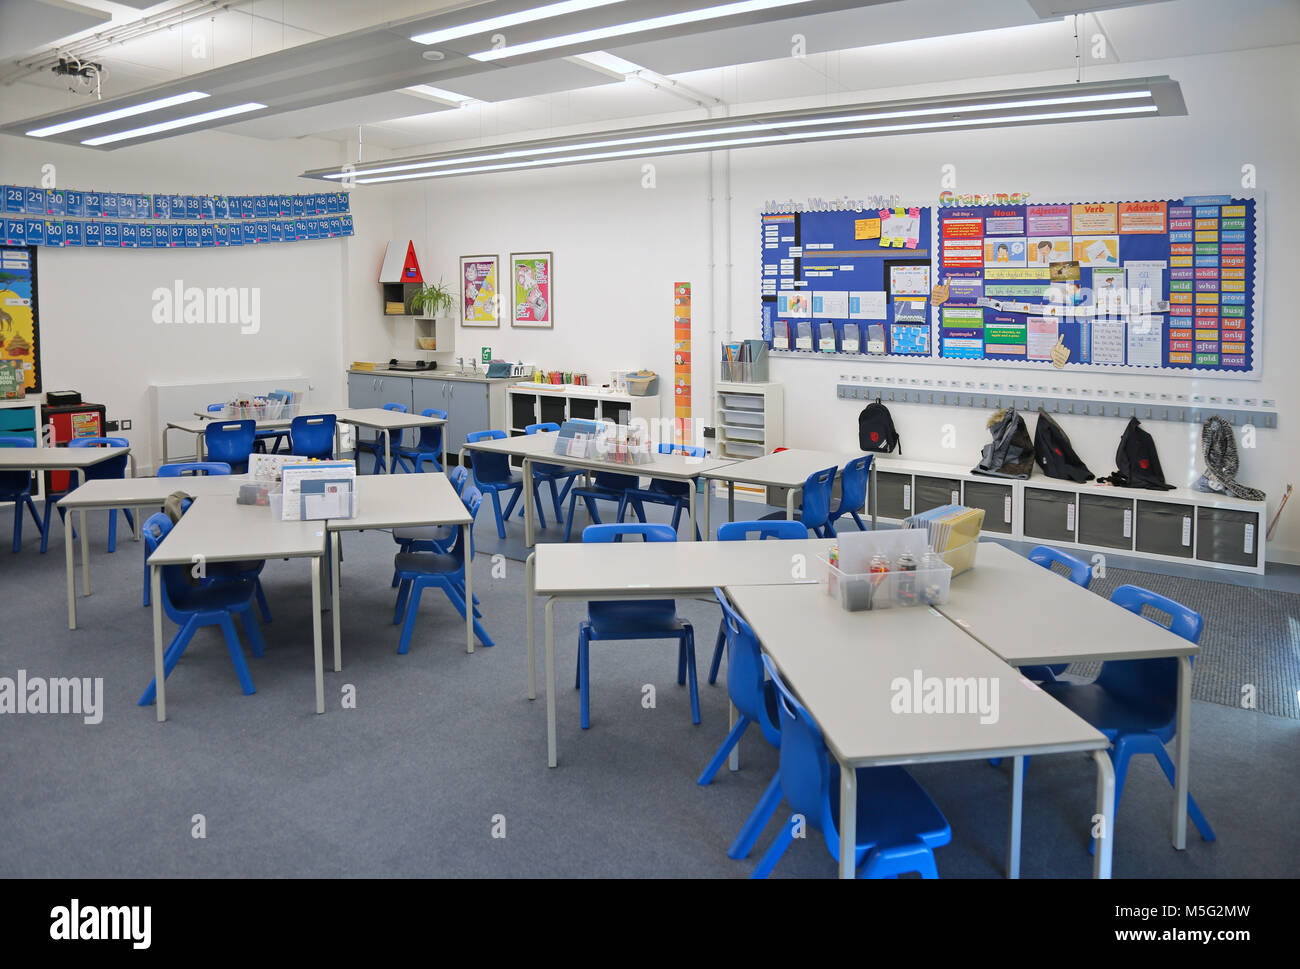 Klassenzimmer in einer neu erbauten Londoner Grundschule. Zeigt in Gruppen geglieder Schreibtische.leer, keine Schüler. Stockfoto